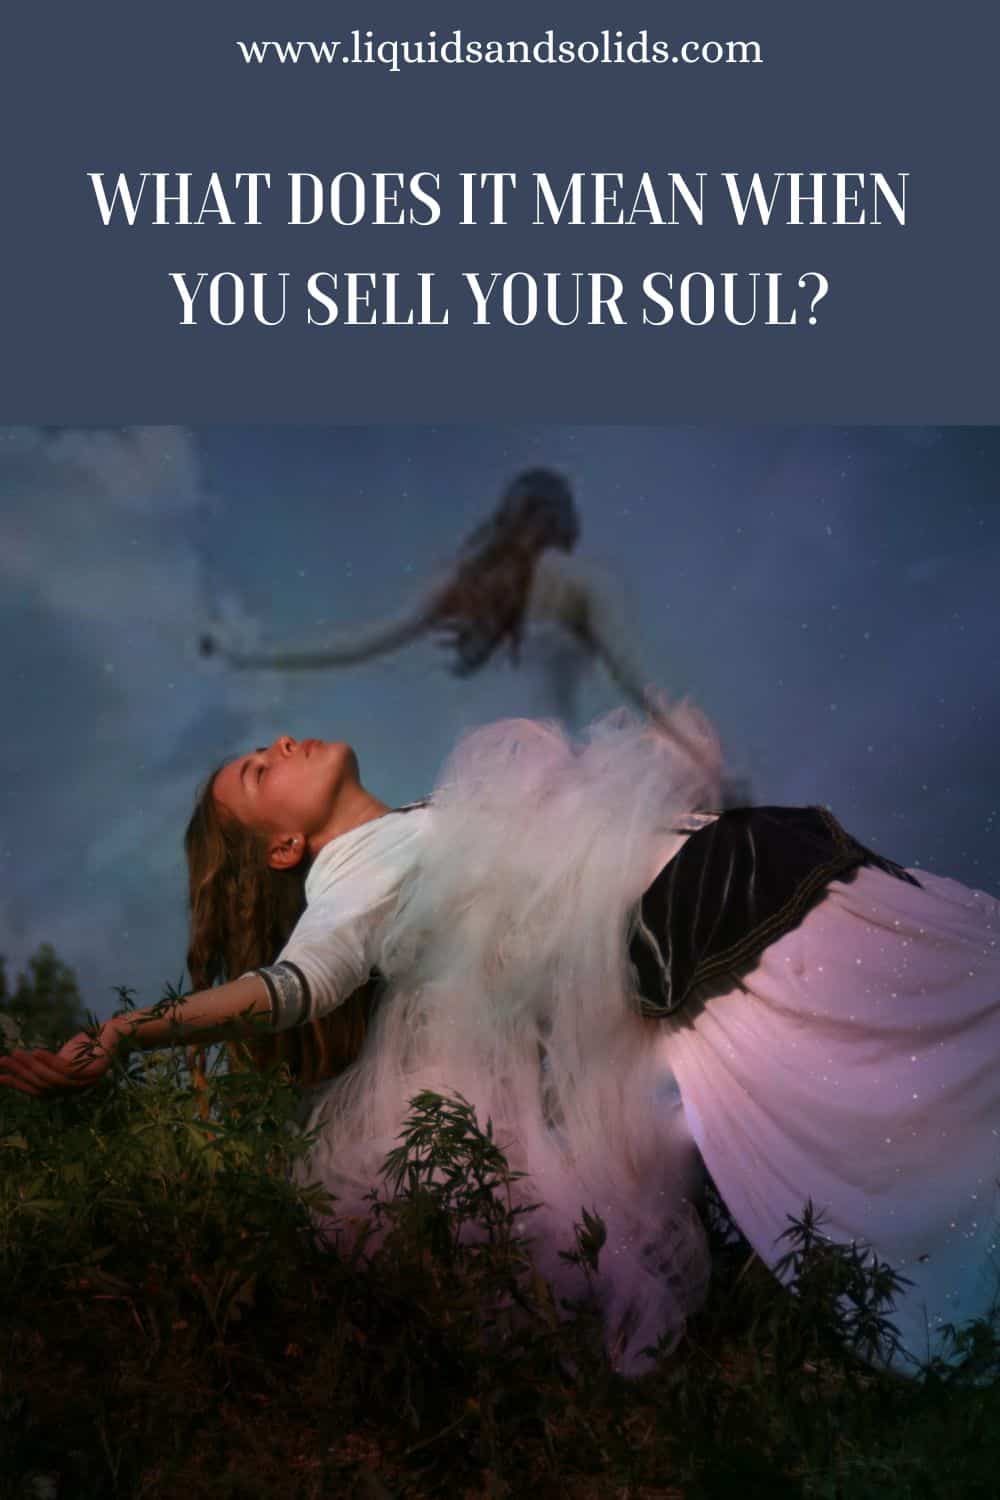  ماذا يعني عندما تبيع روحك؟ (6 معاني روحية)